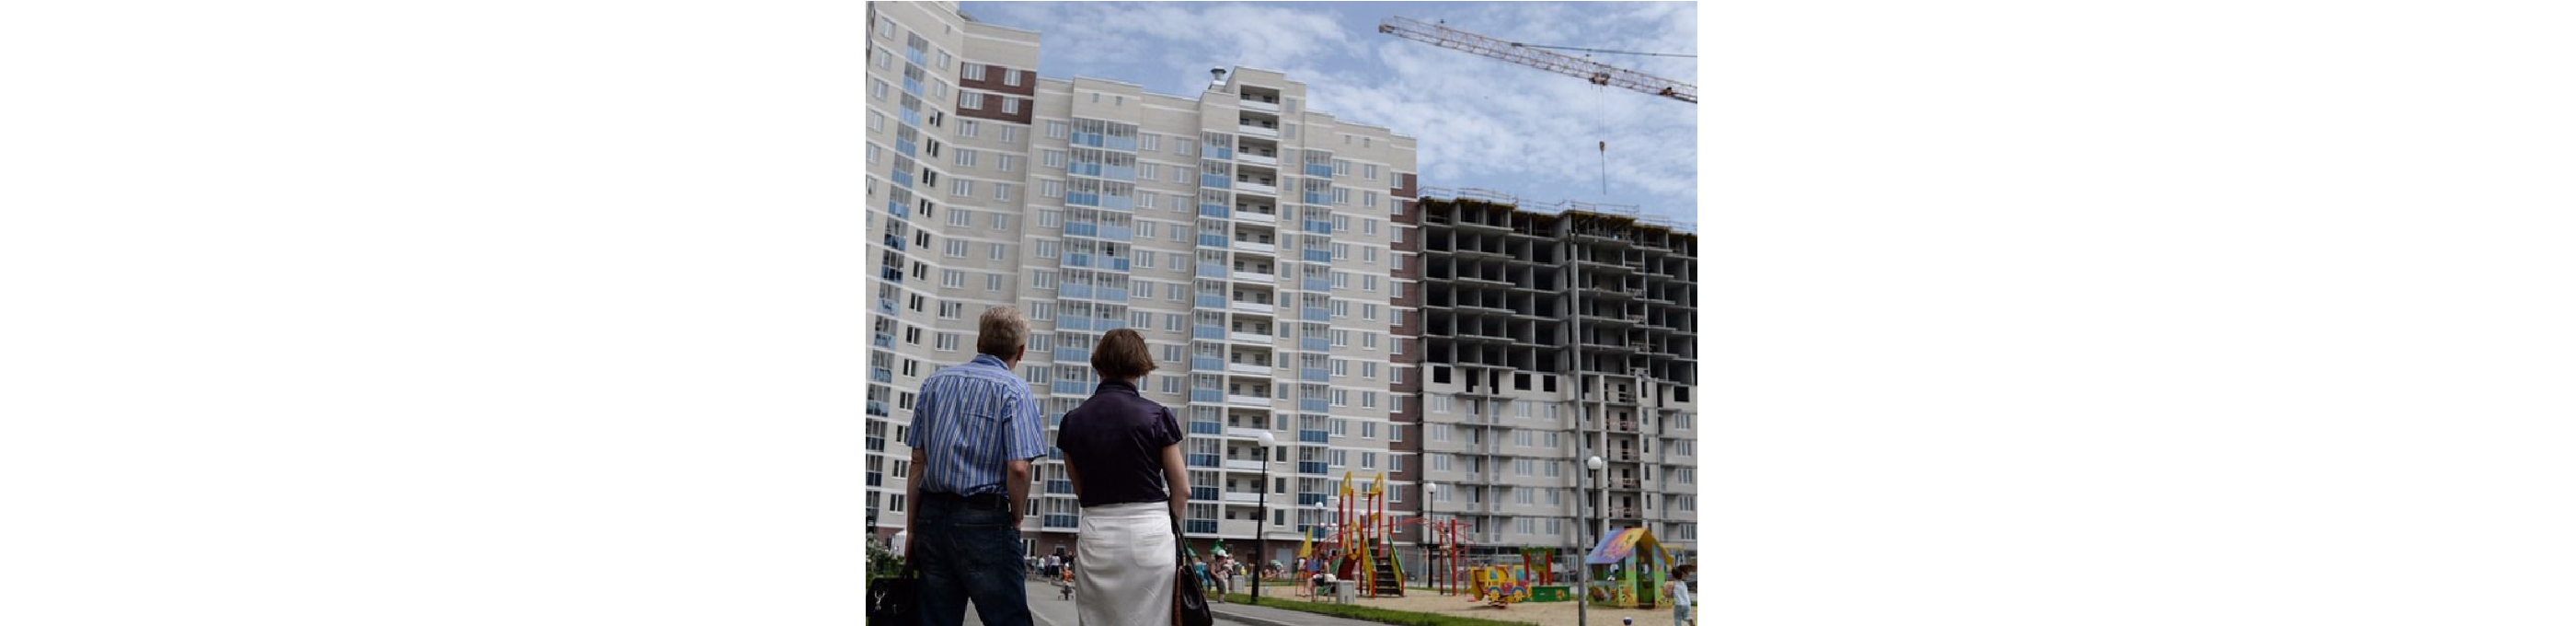 Долевого строительства больше не будет начиная с 2020 года. Купить можно будет только достроенное жилье